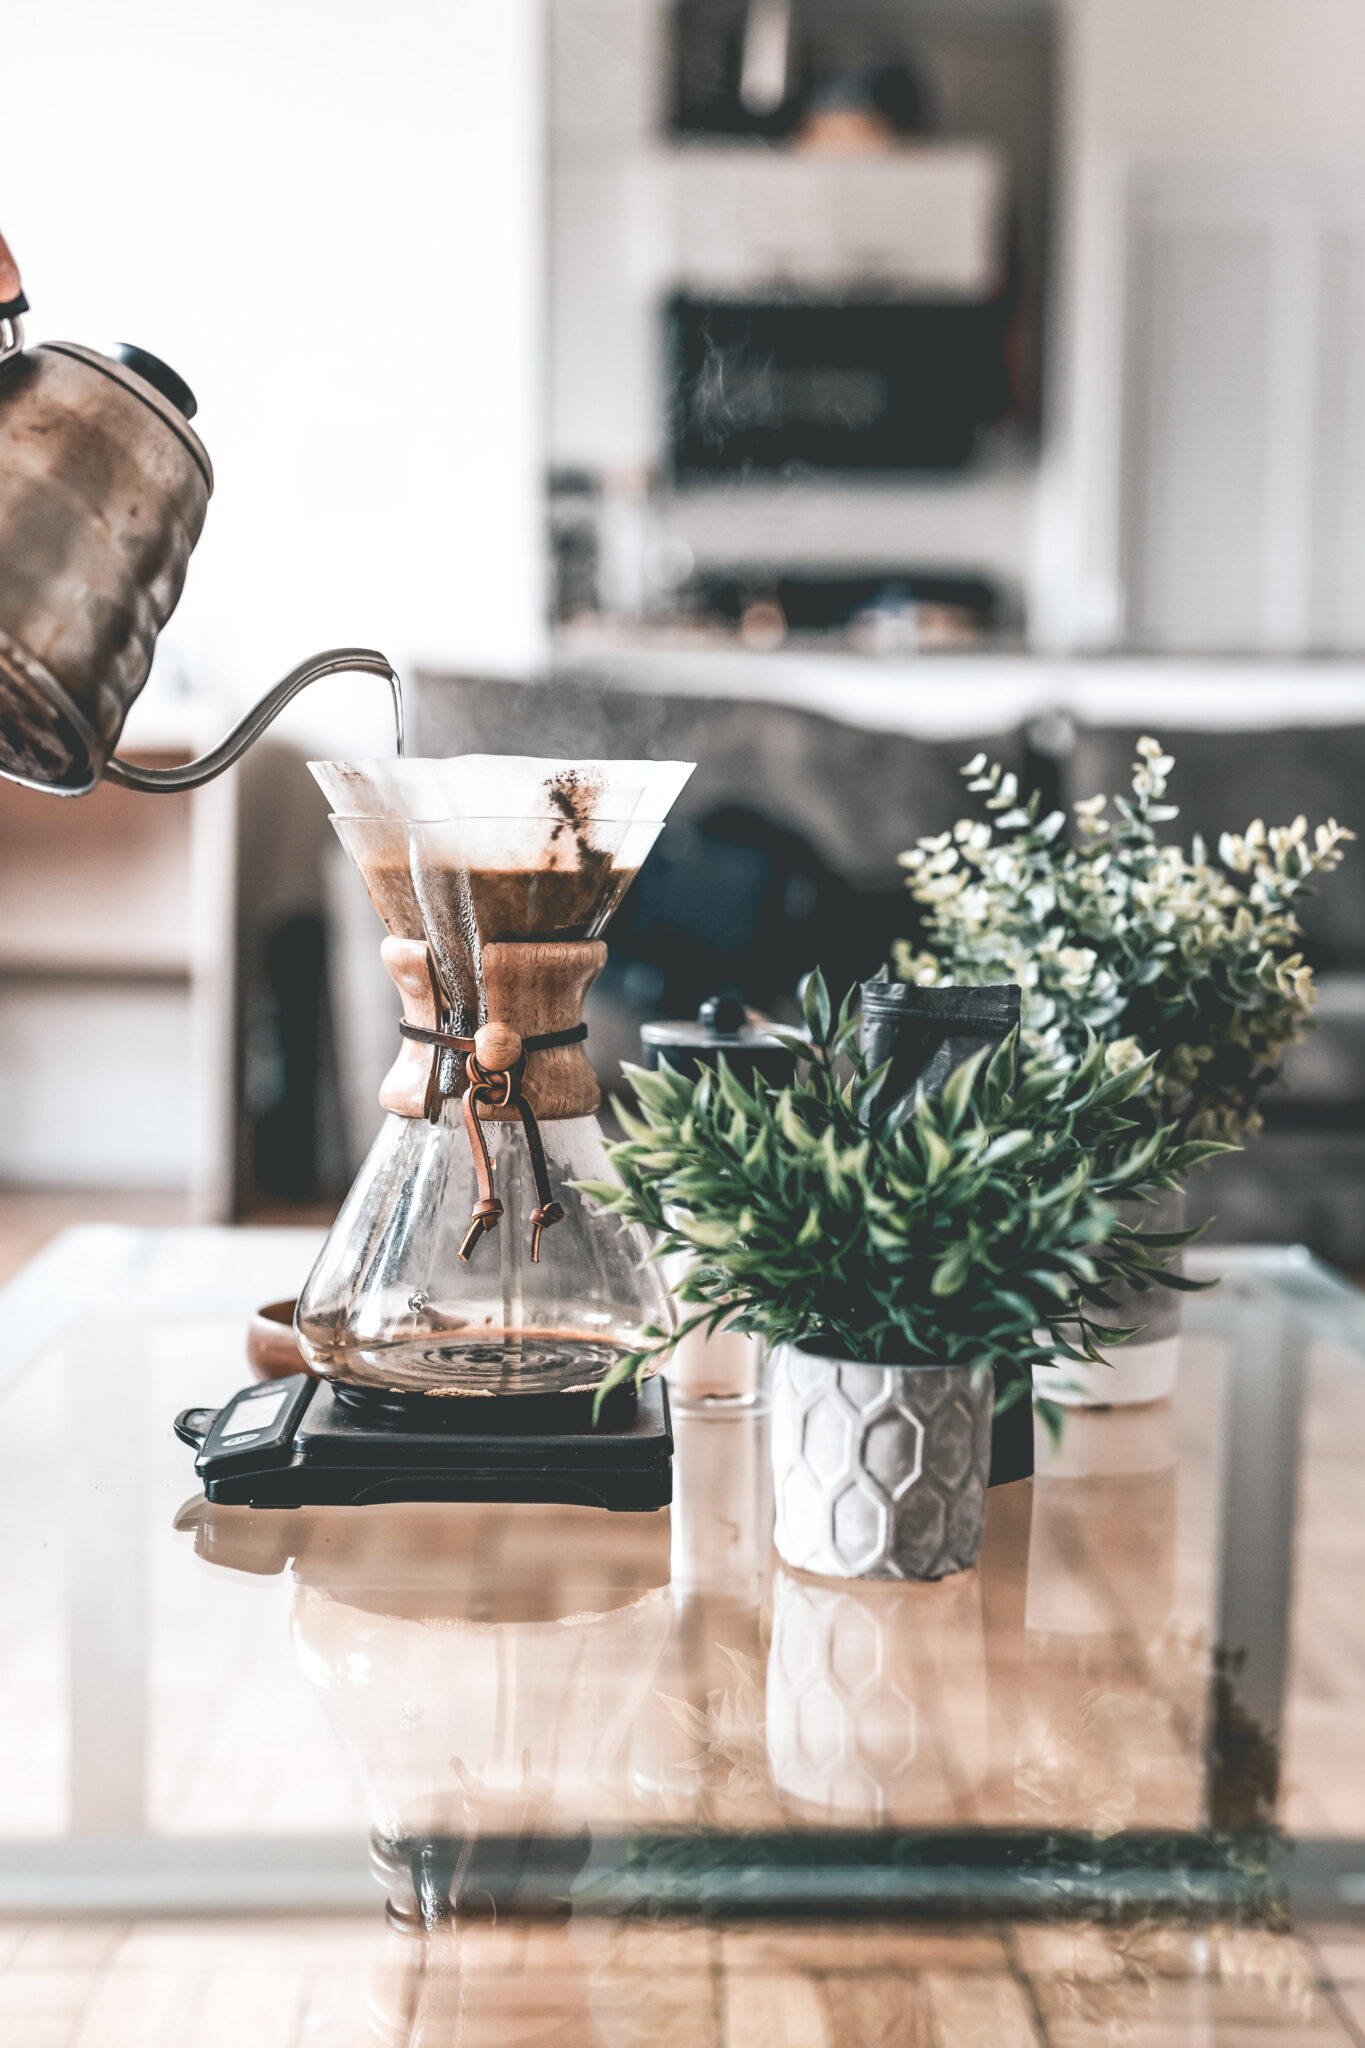 , De 5 beste soorten filterkoffie om thuis te maken, volgens een barista